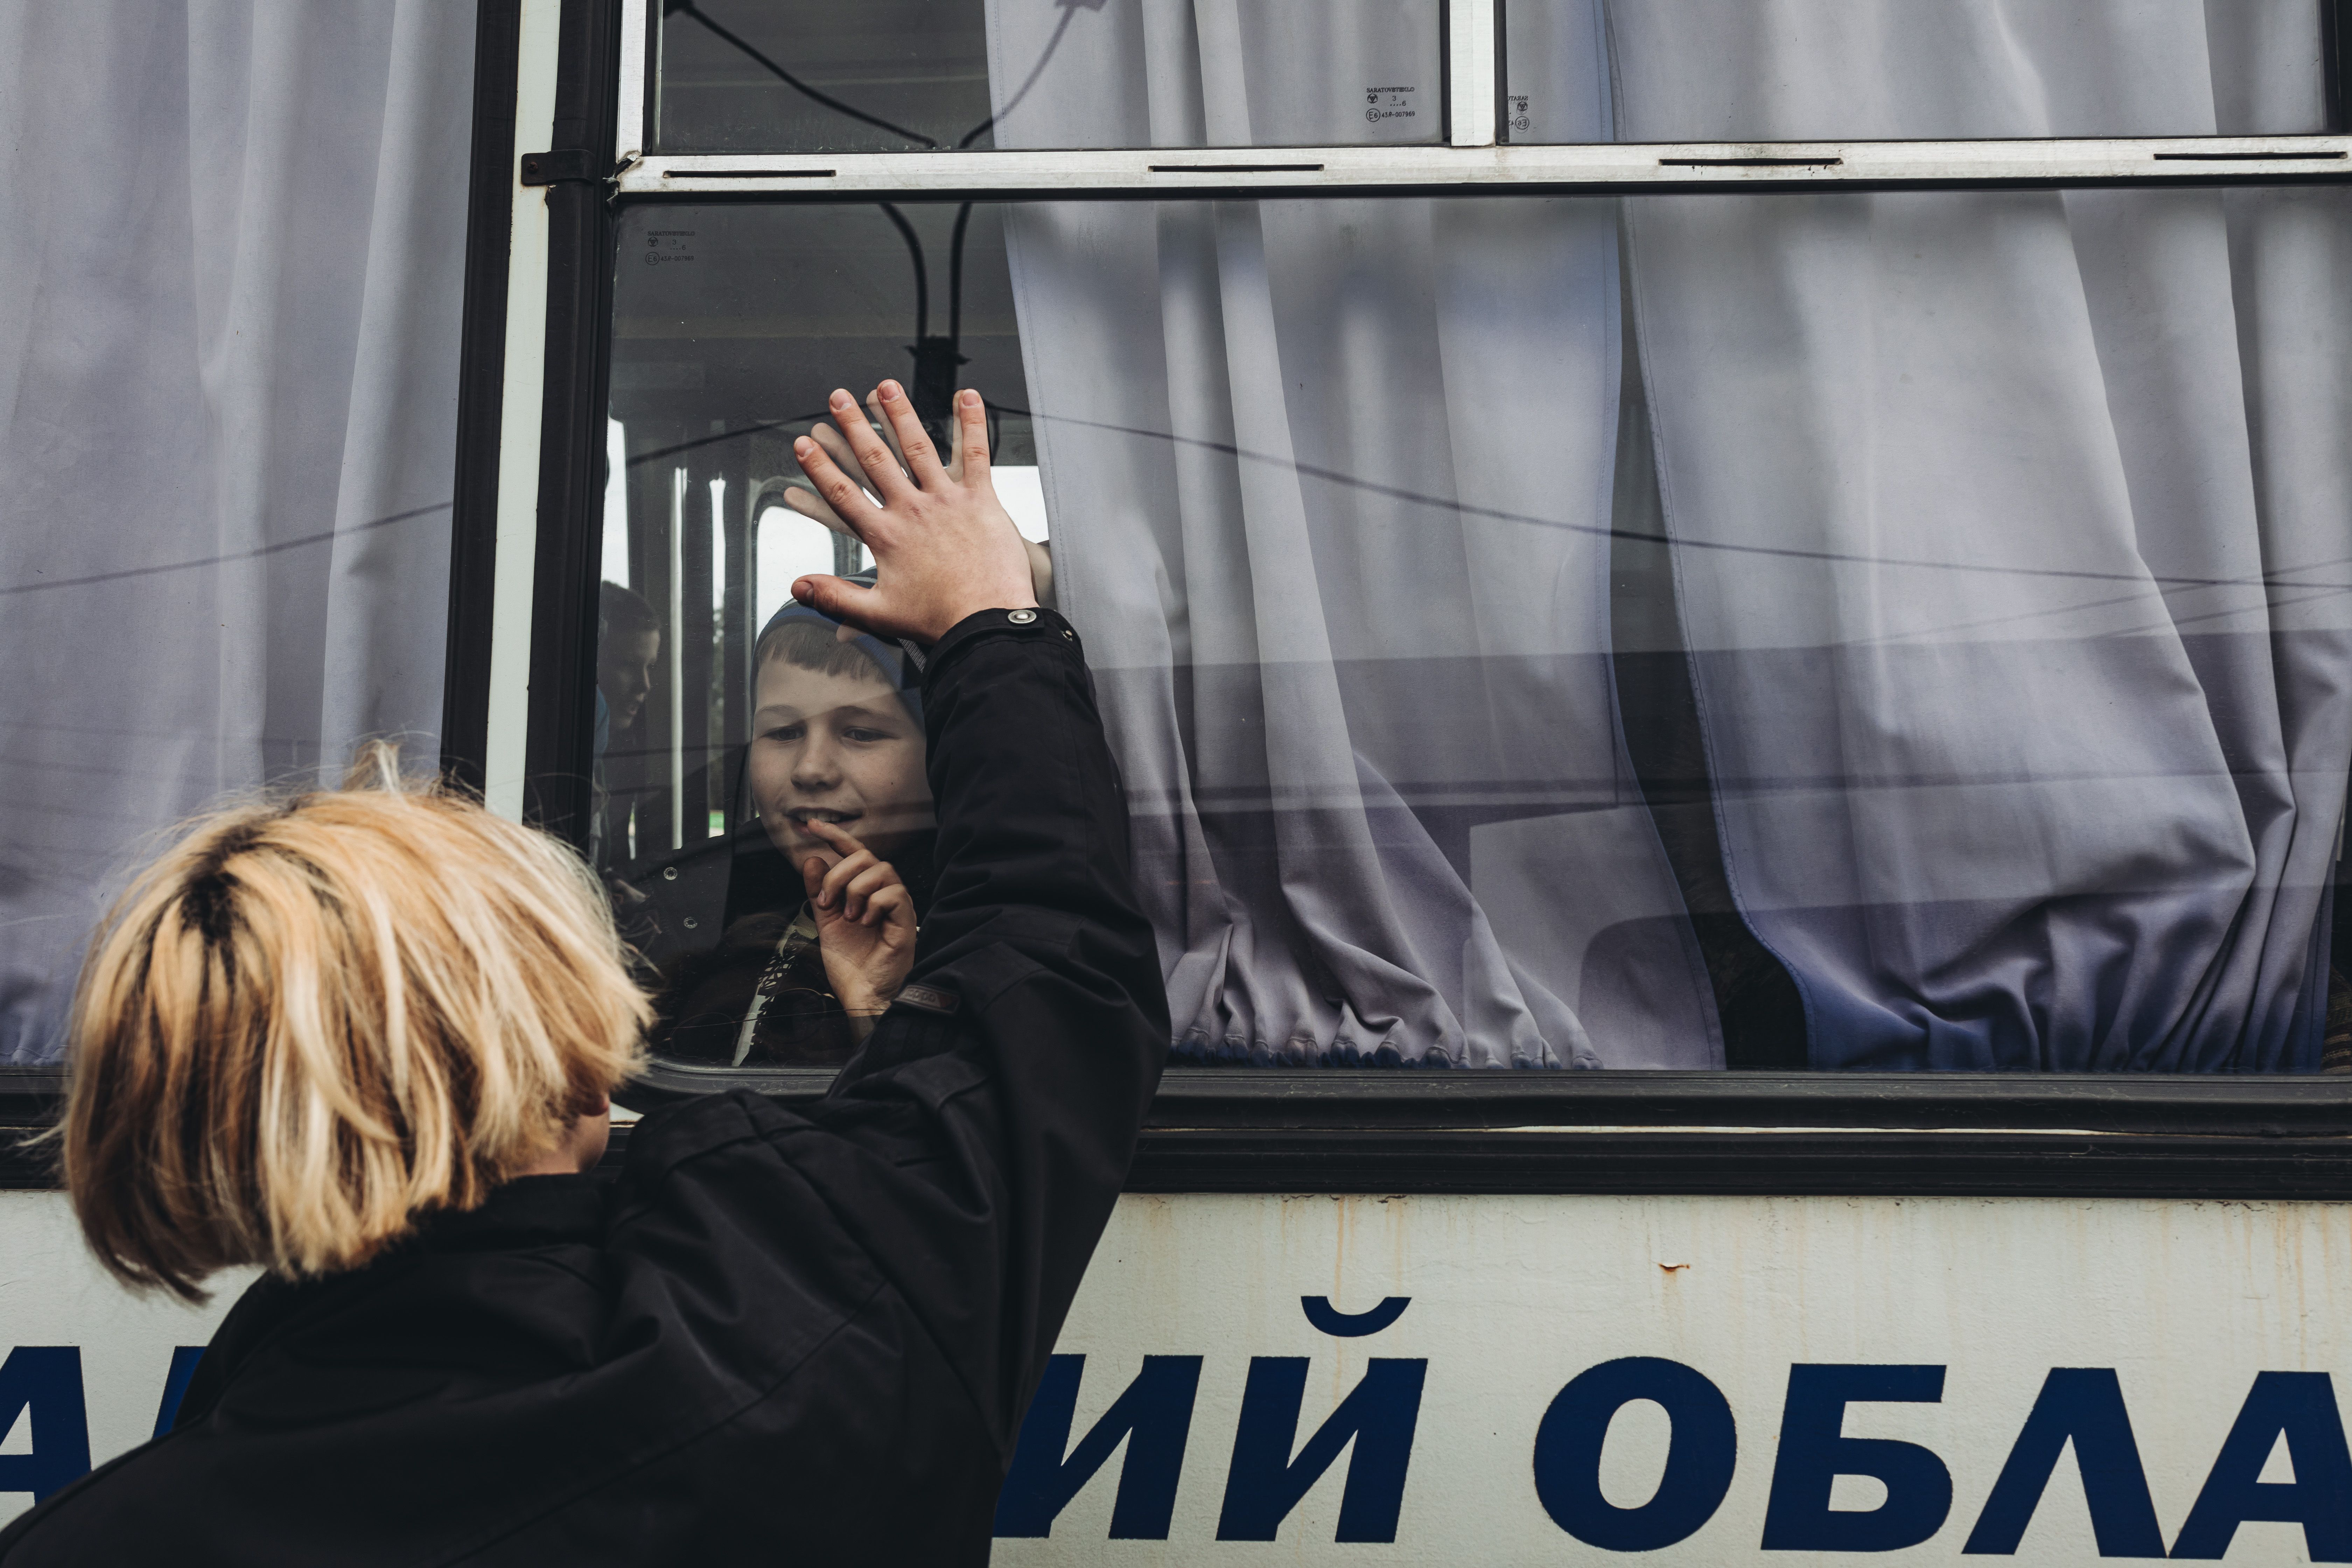 Un joven despide a un amigo desde fuera del autobús, a 24 de febrero de 2022, en Lisichansk, Oblast de Lugansk ( Ucrania). Diego Herrera / Europa Press.